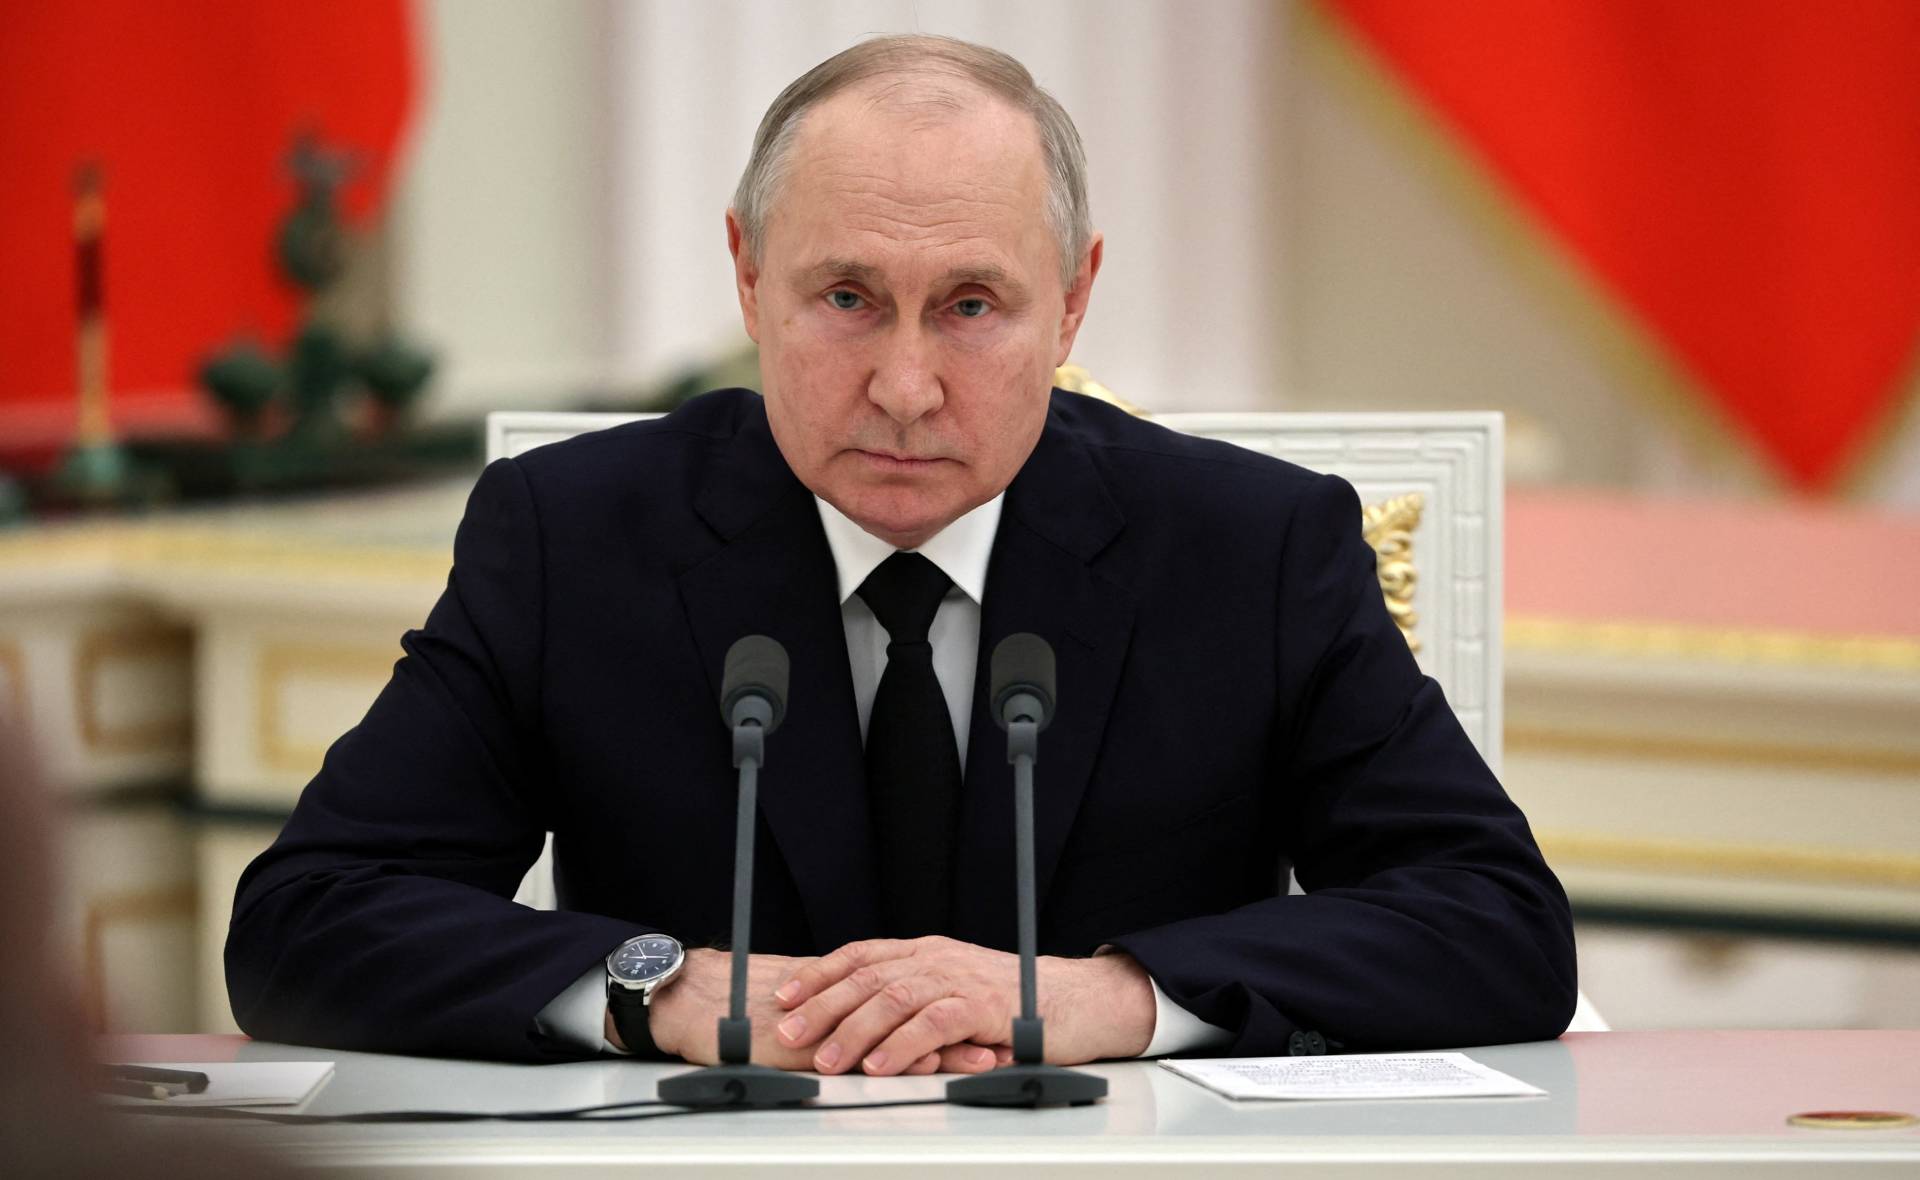 O Β.Πούτιν δεν θα παρευρεθεί στη σύνοδο κορυφής των BRICS – Από τον Σ.Λαβρόφ θα εκπροσωπηθεί η Ρωσία